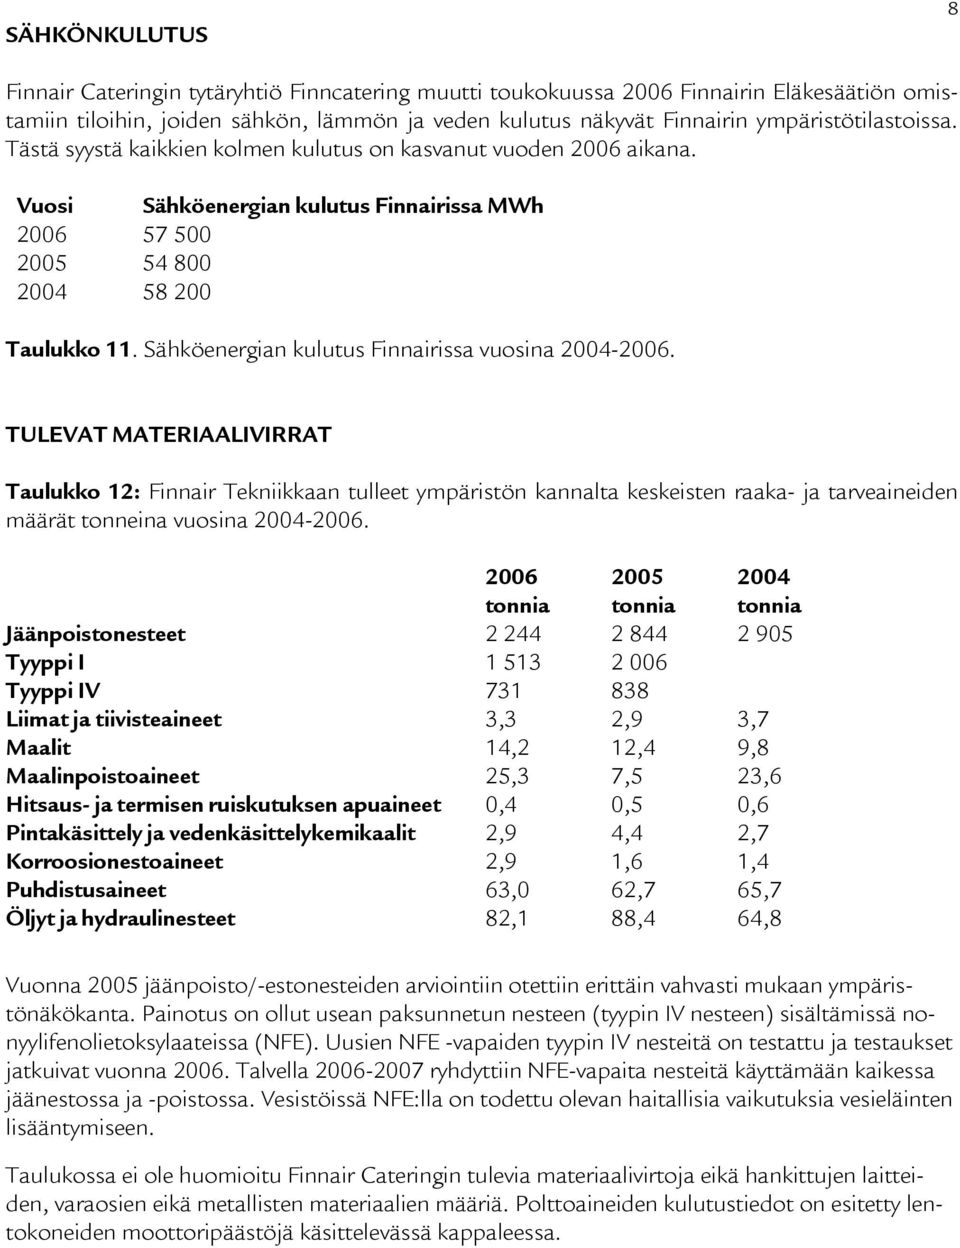 Sähköenergian kulutus Finnairissa vuosina 2004-2006.